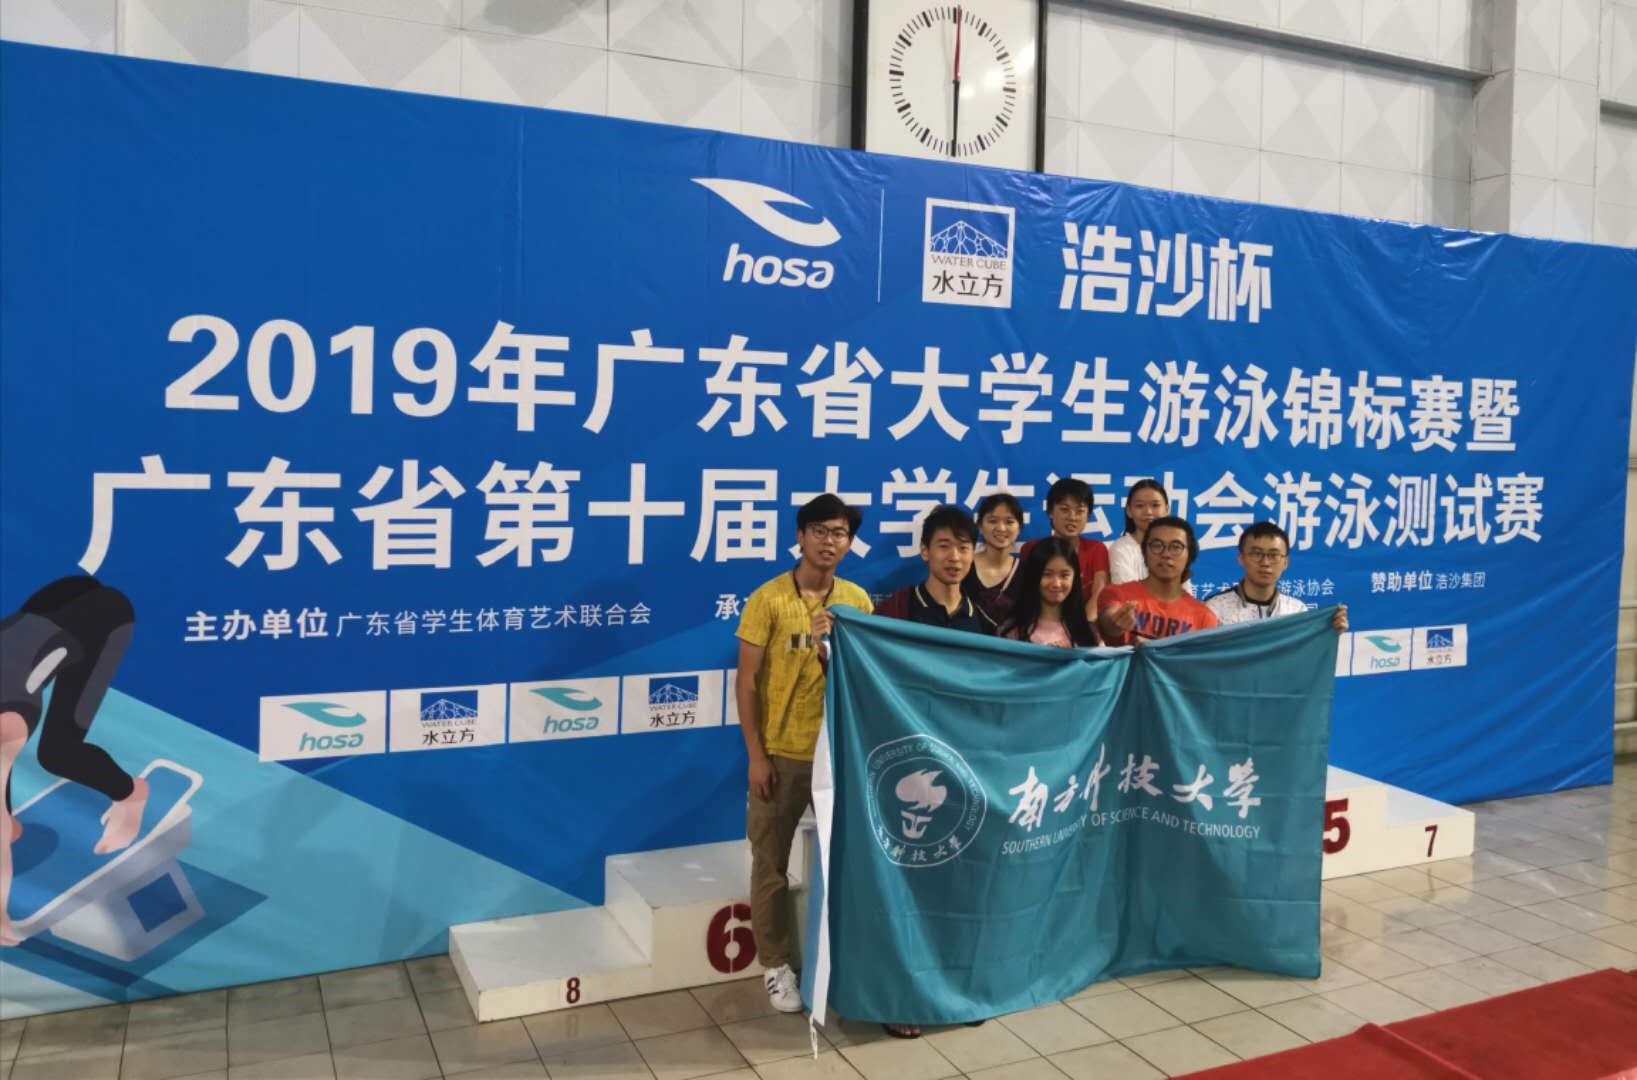 校游泳队在2019年“浩沙杯”广东省大学生游泳锦标赛获佳绩